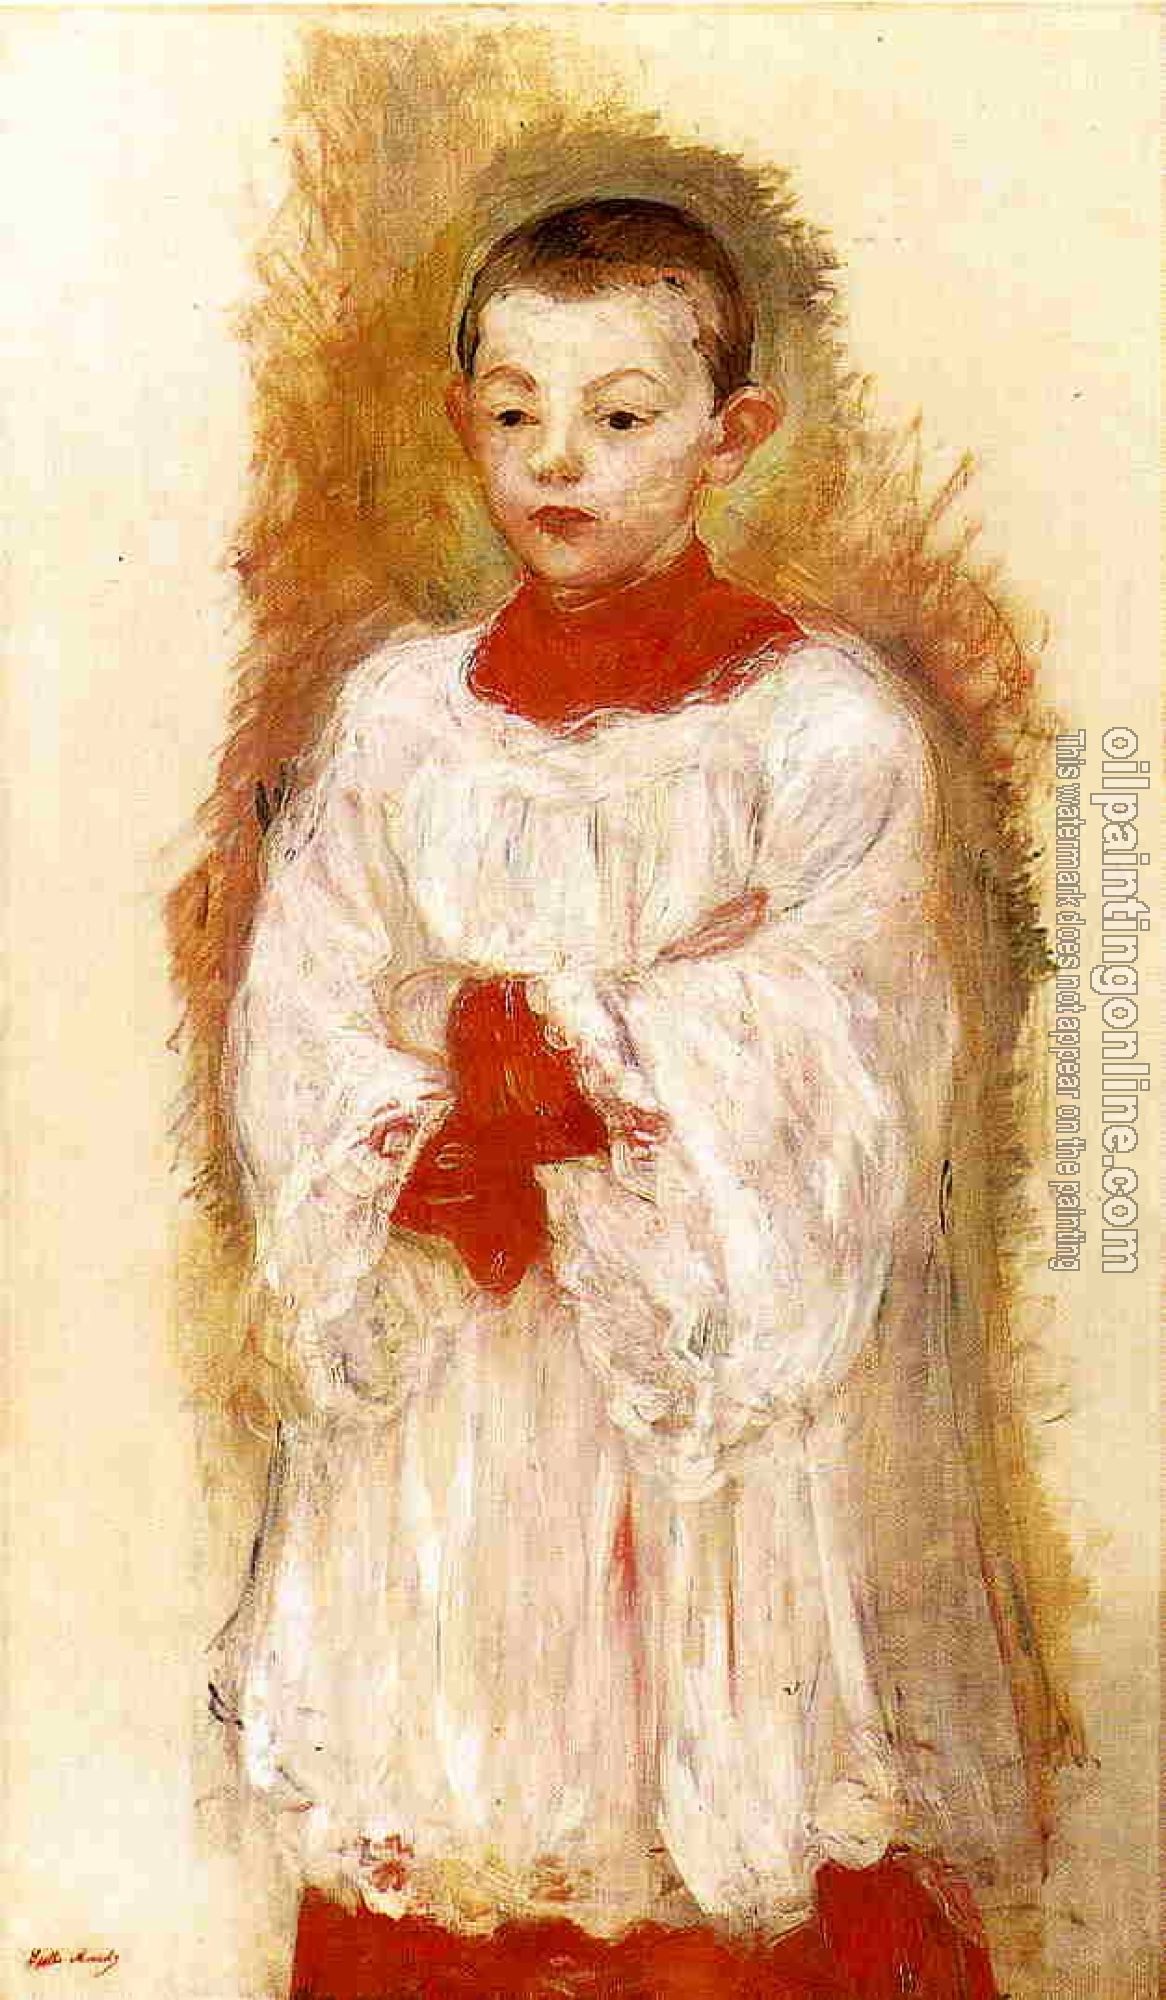 Morisot, Berthe - Choir Boy